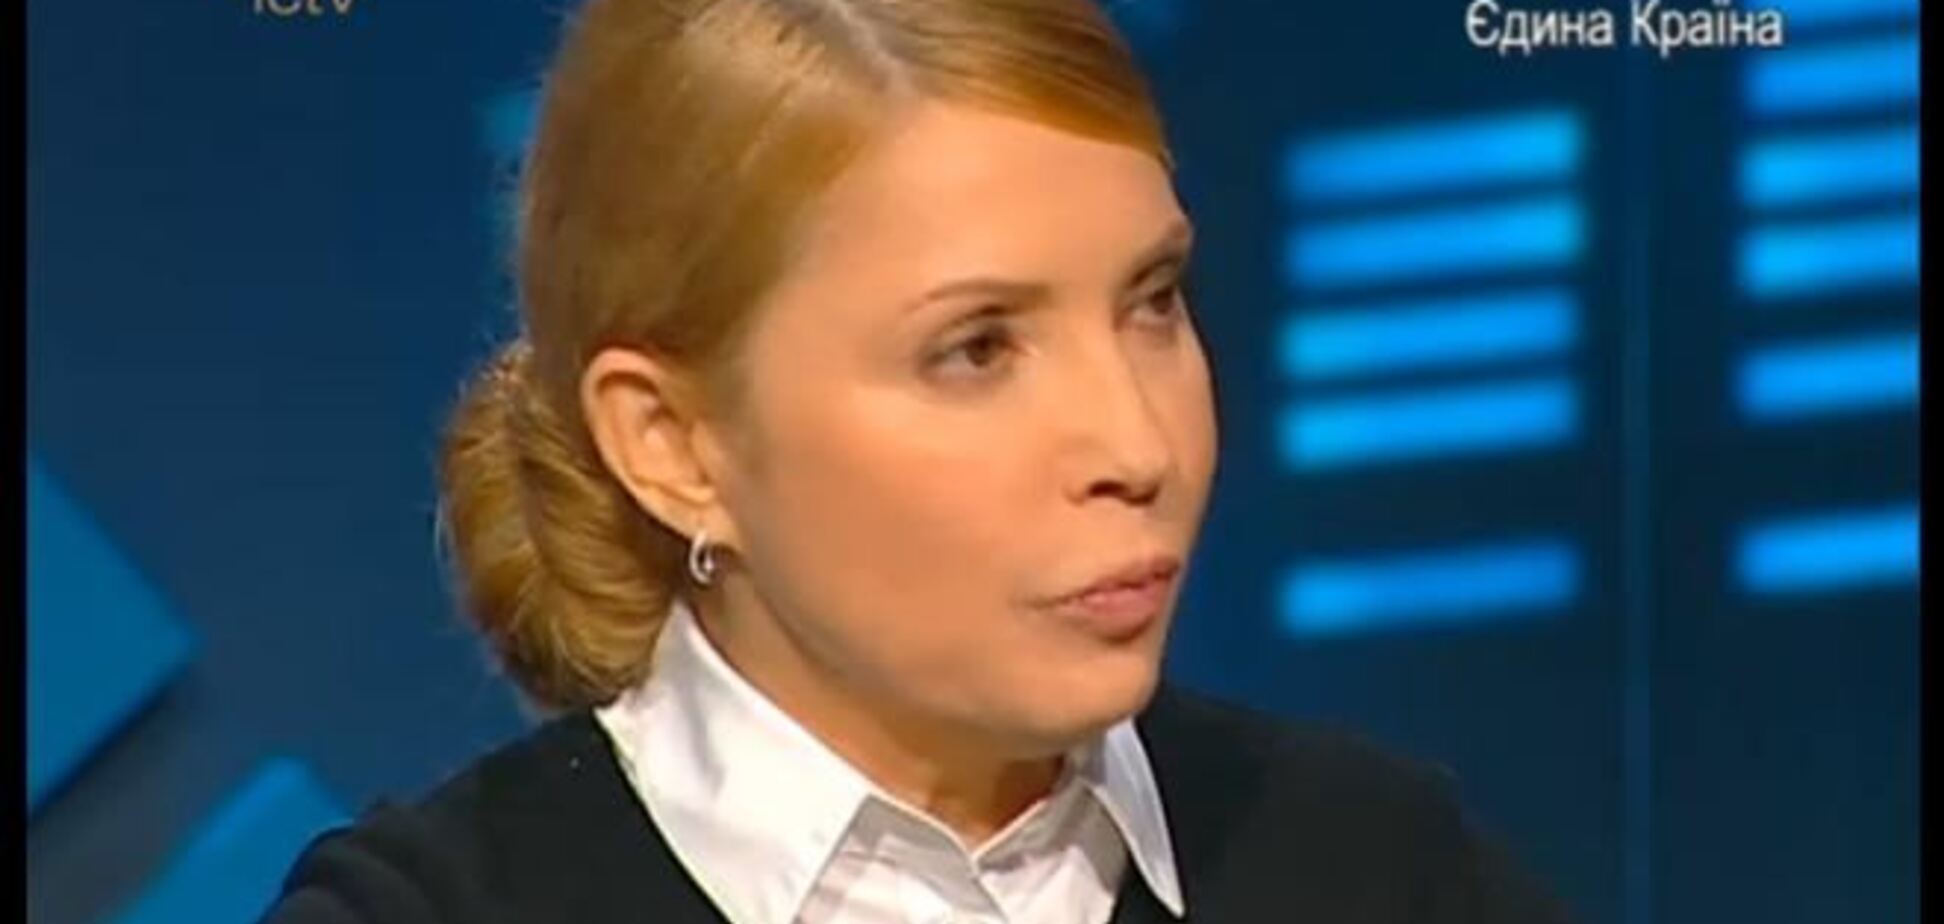 Тимошенко отрицает свою заинтересованность в срыве президентских выборов